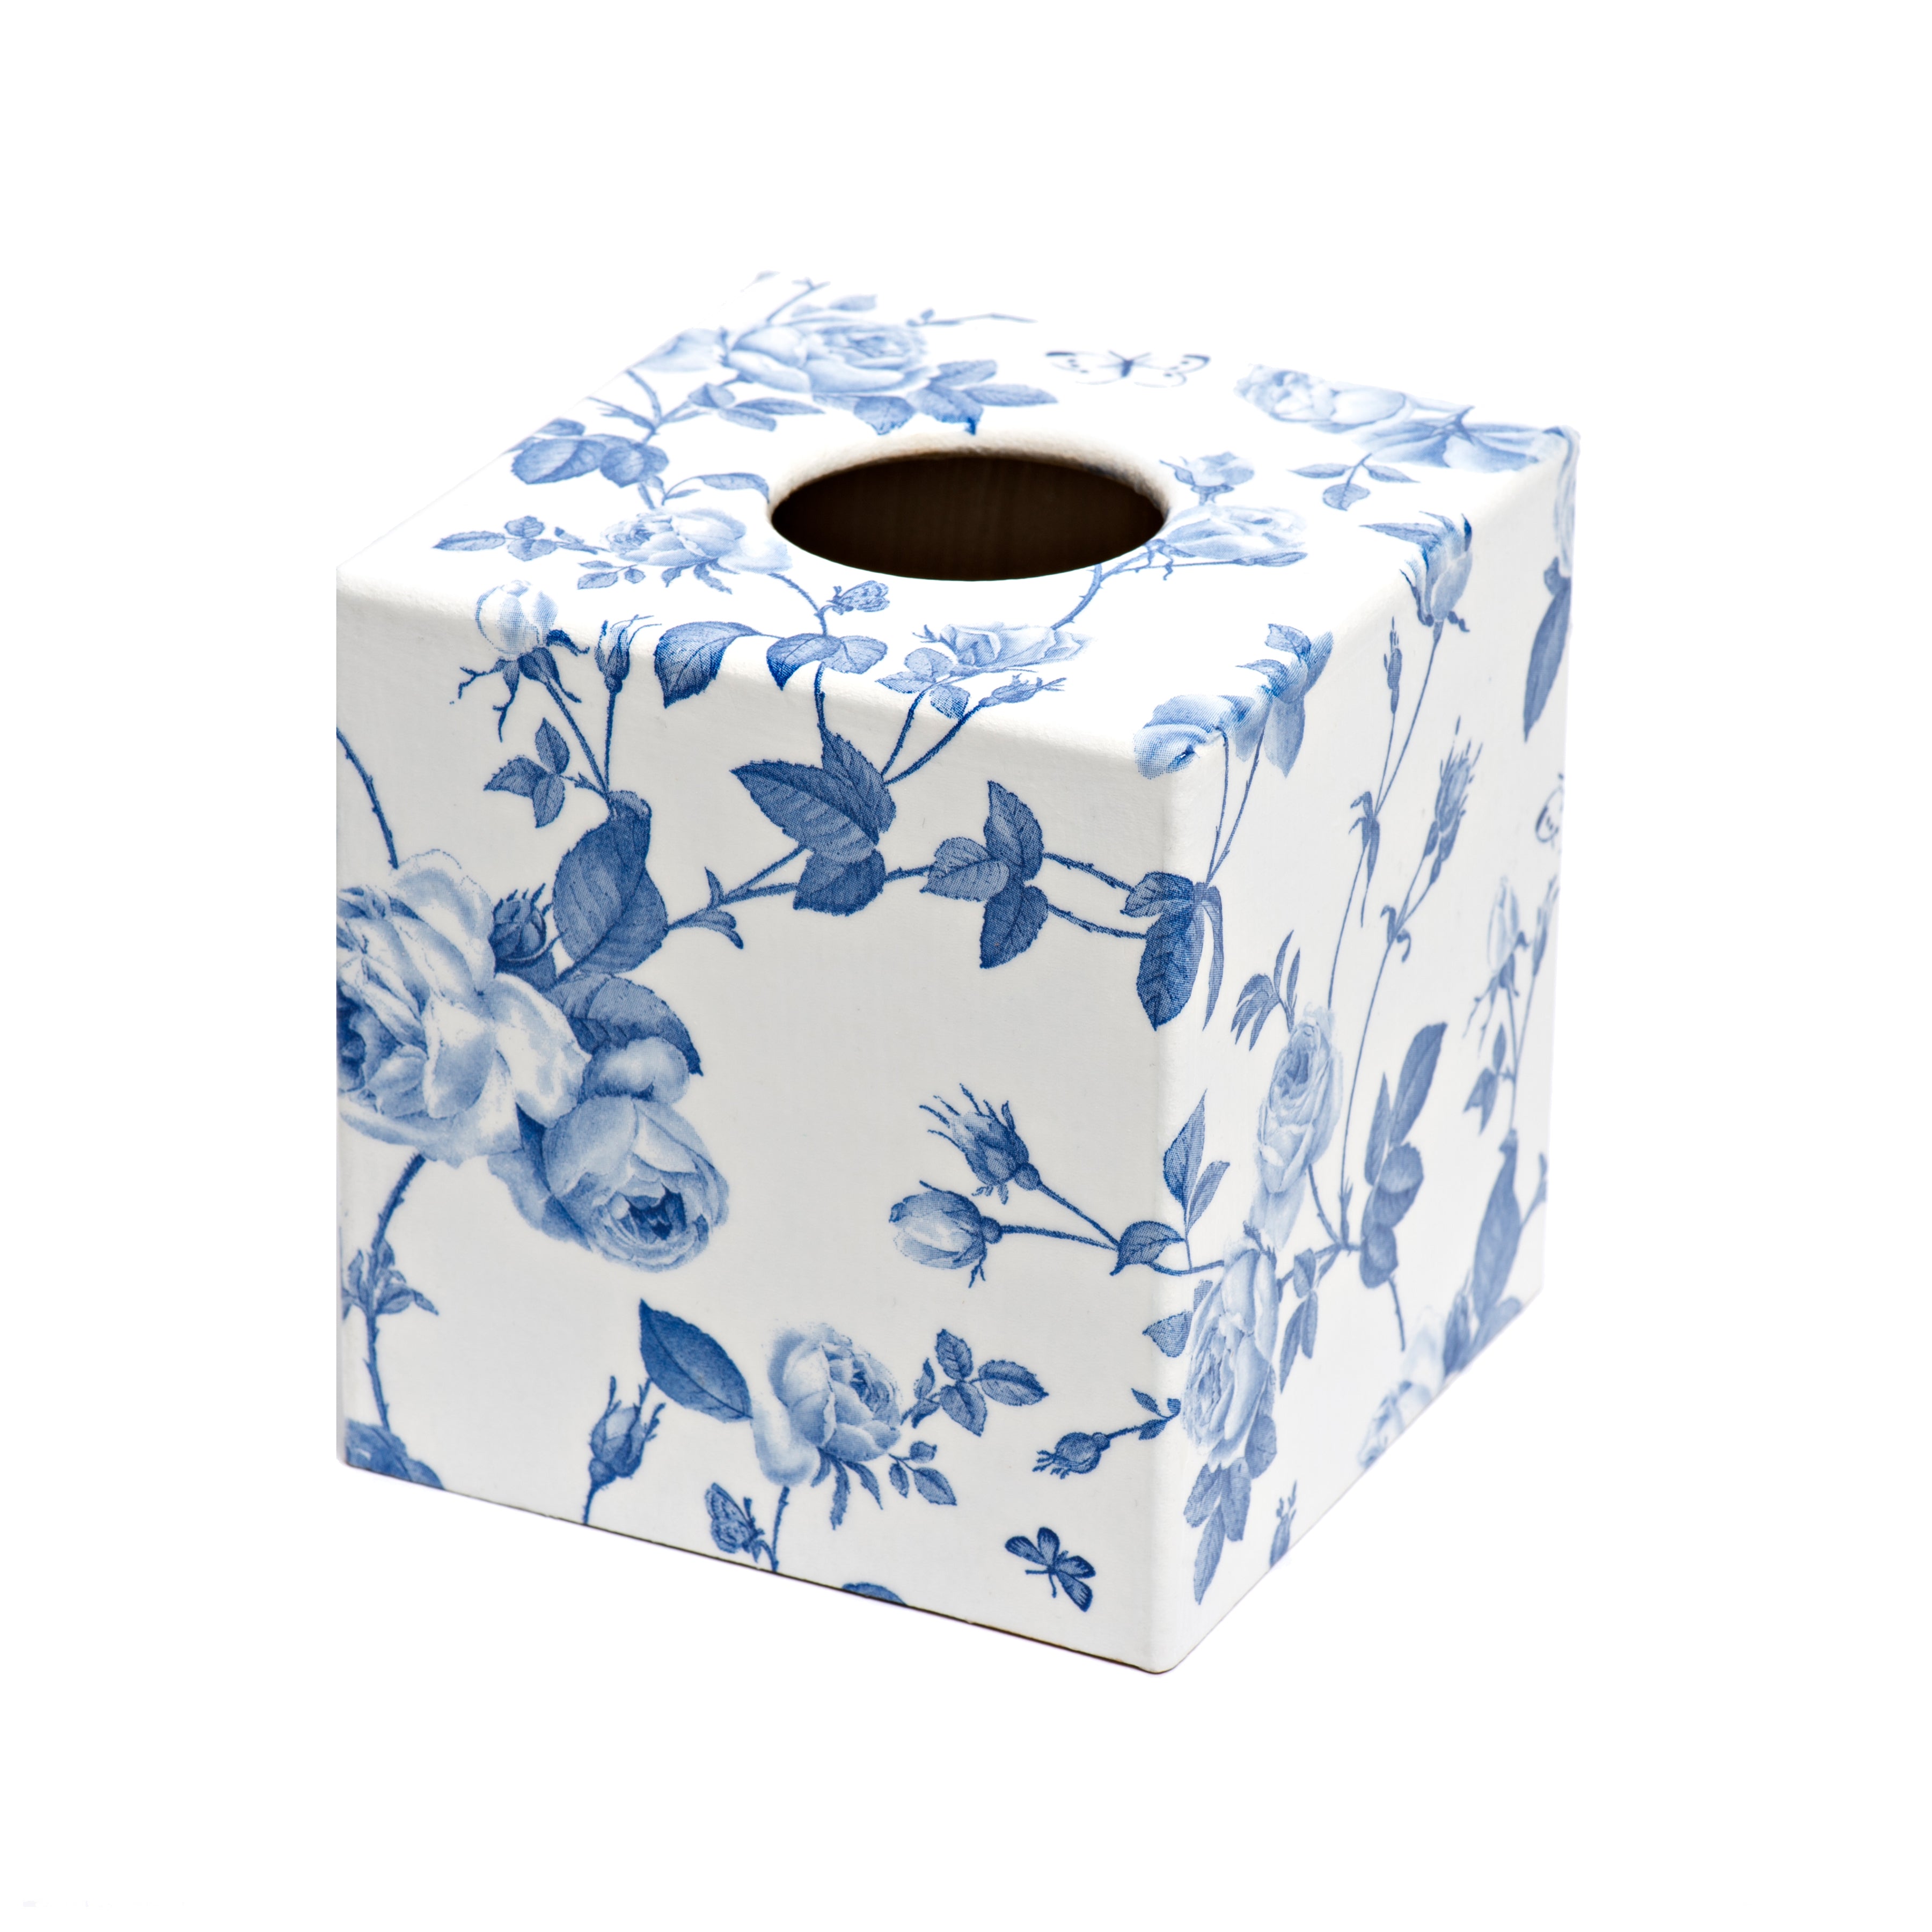 Blue Flower Tissue Box Cover - Handmade